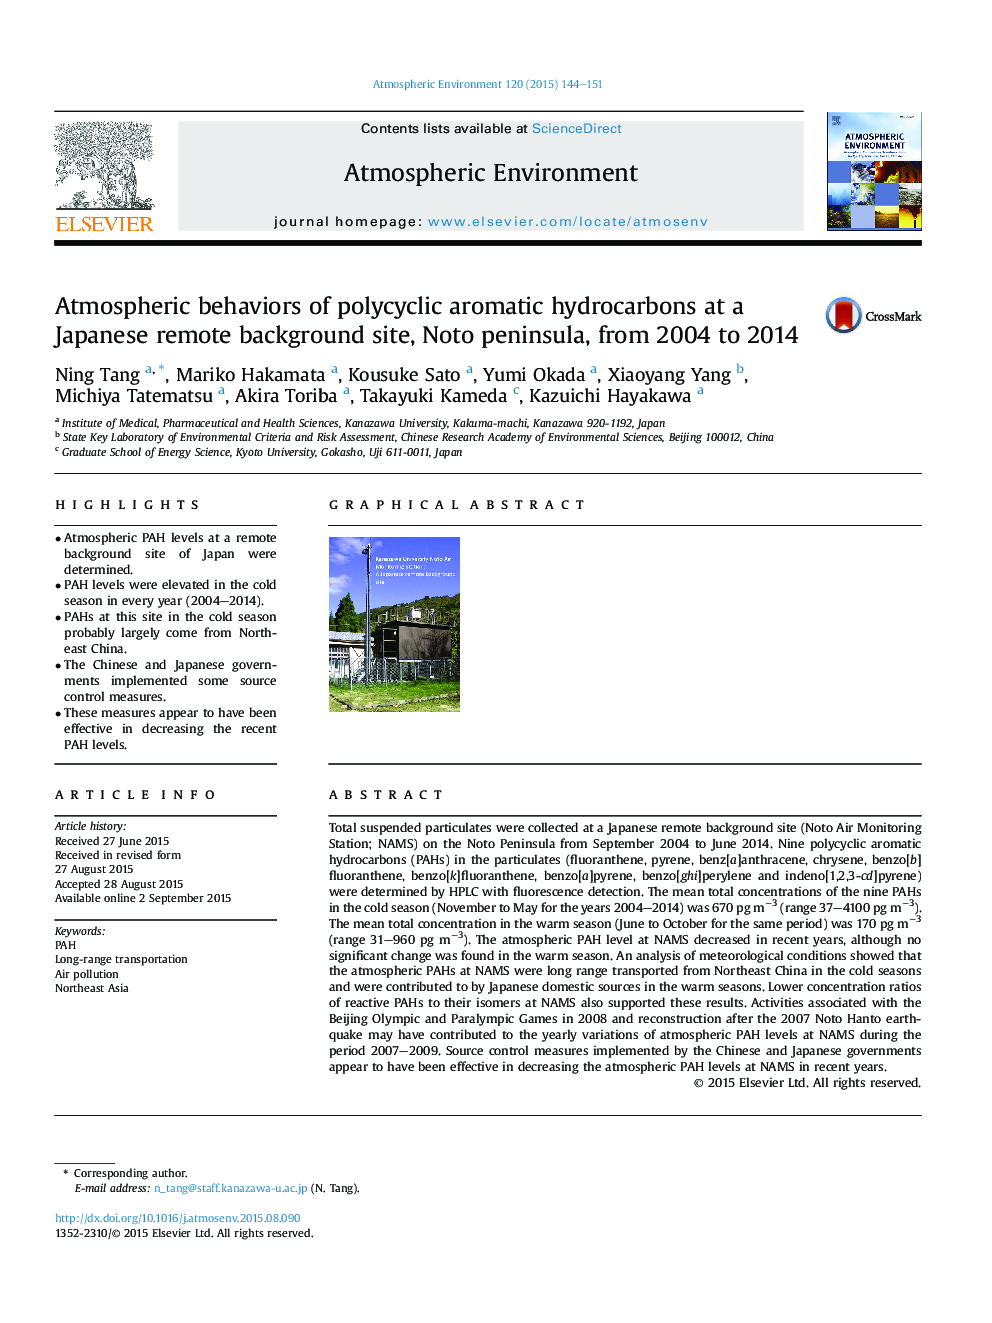 رفتارهای اتمسفری هیدروکربن های آروماتیک چند حلقه ای در یک منطقه پس زمینه از راه دور ژاپن، شبه جزیره نوتو، از 2004 تا 2014 